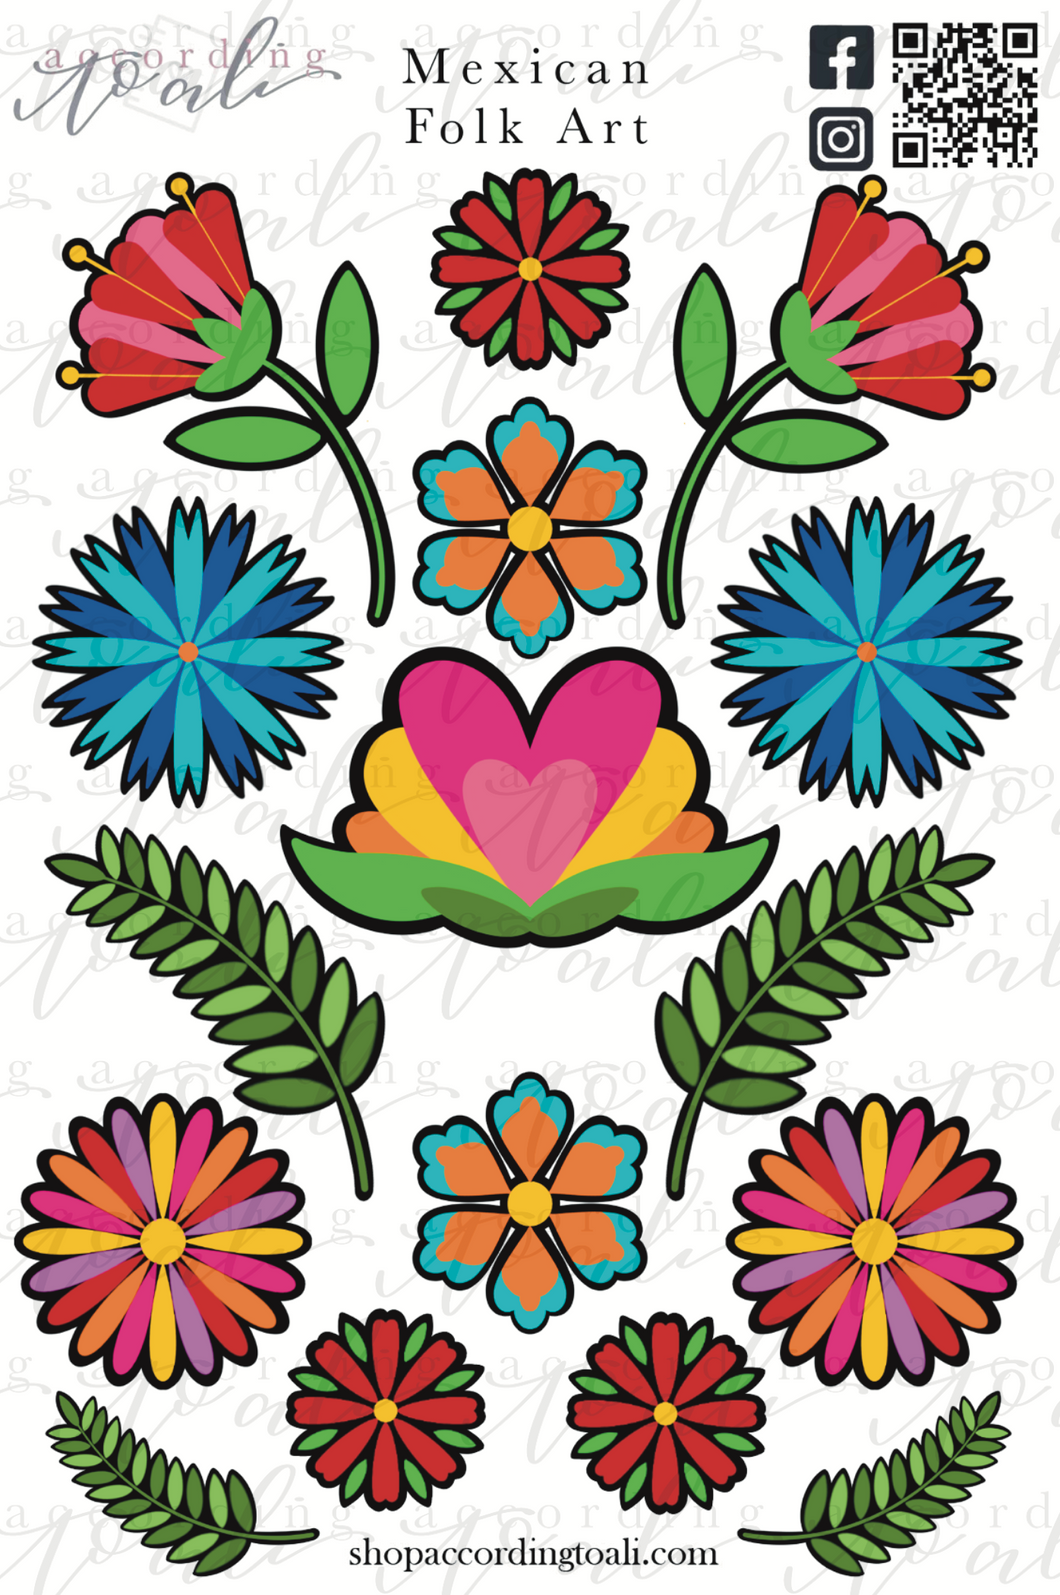 Mexican Folk Art Sticker Sheet